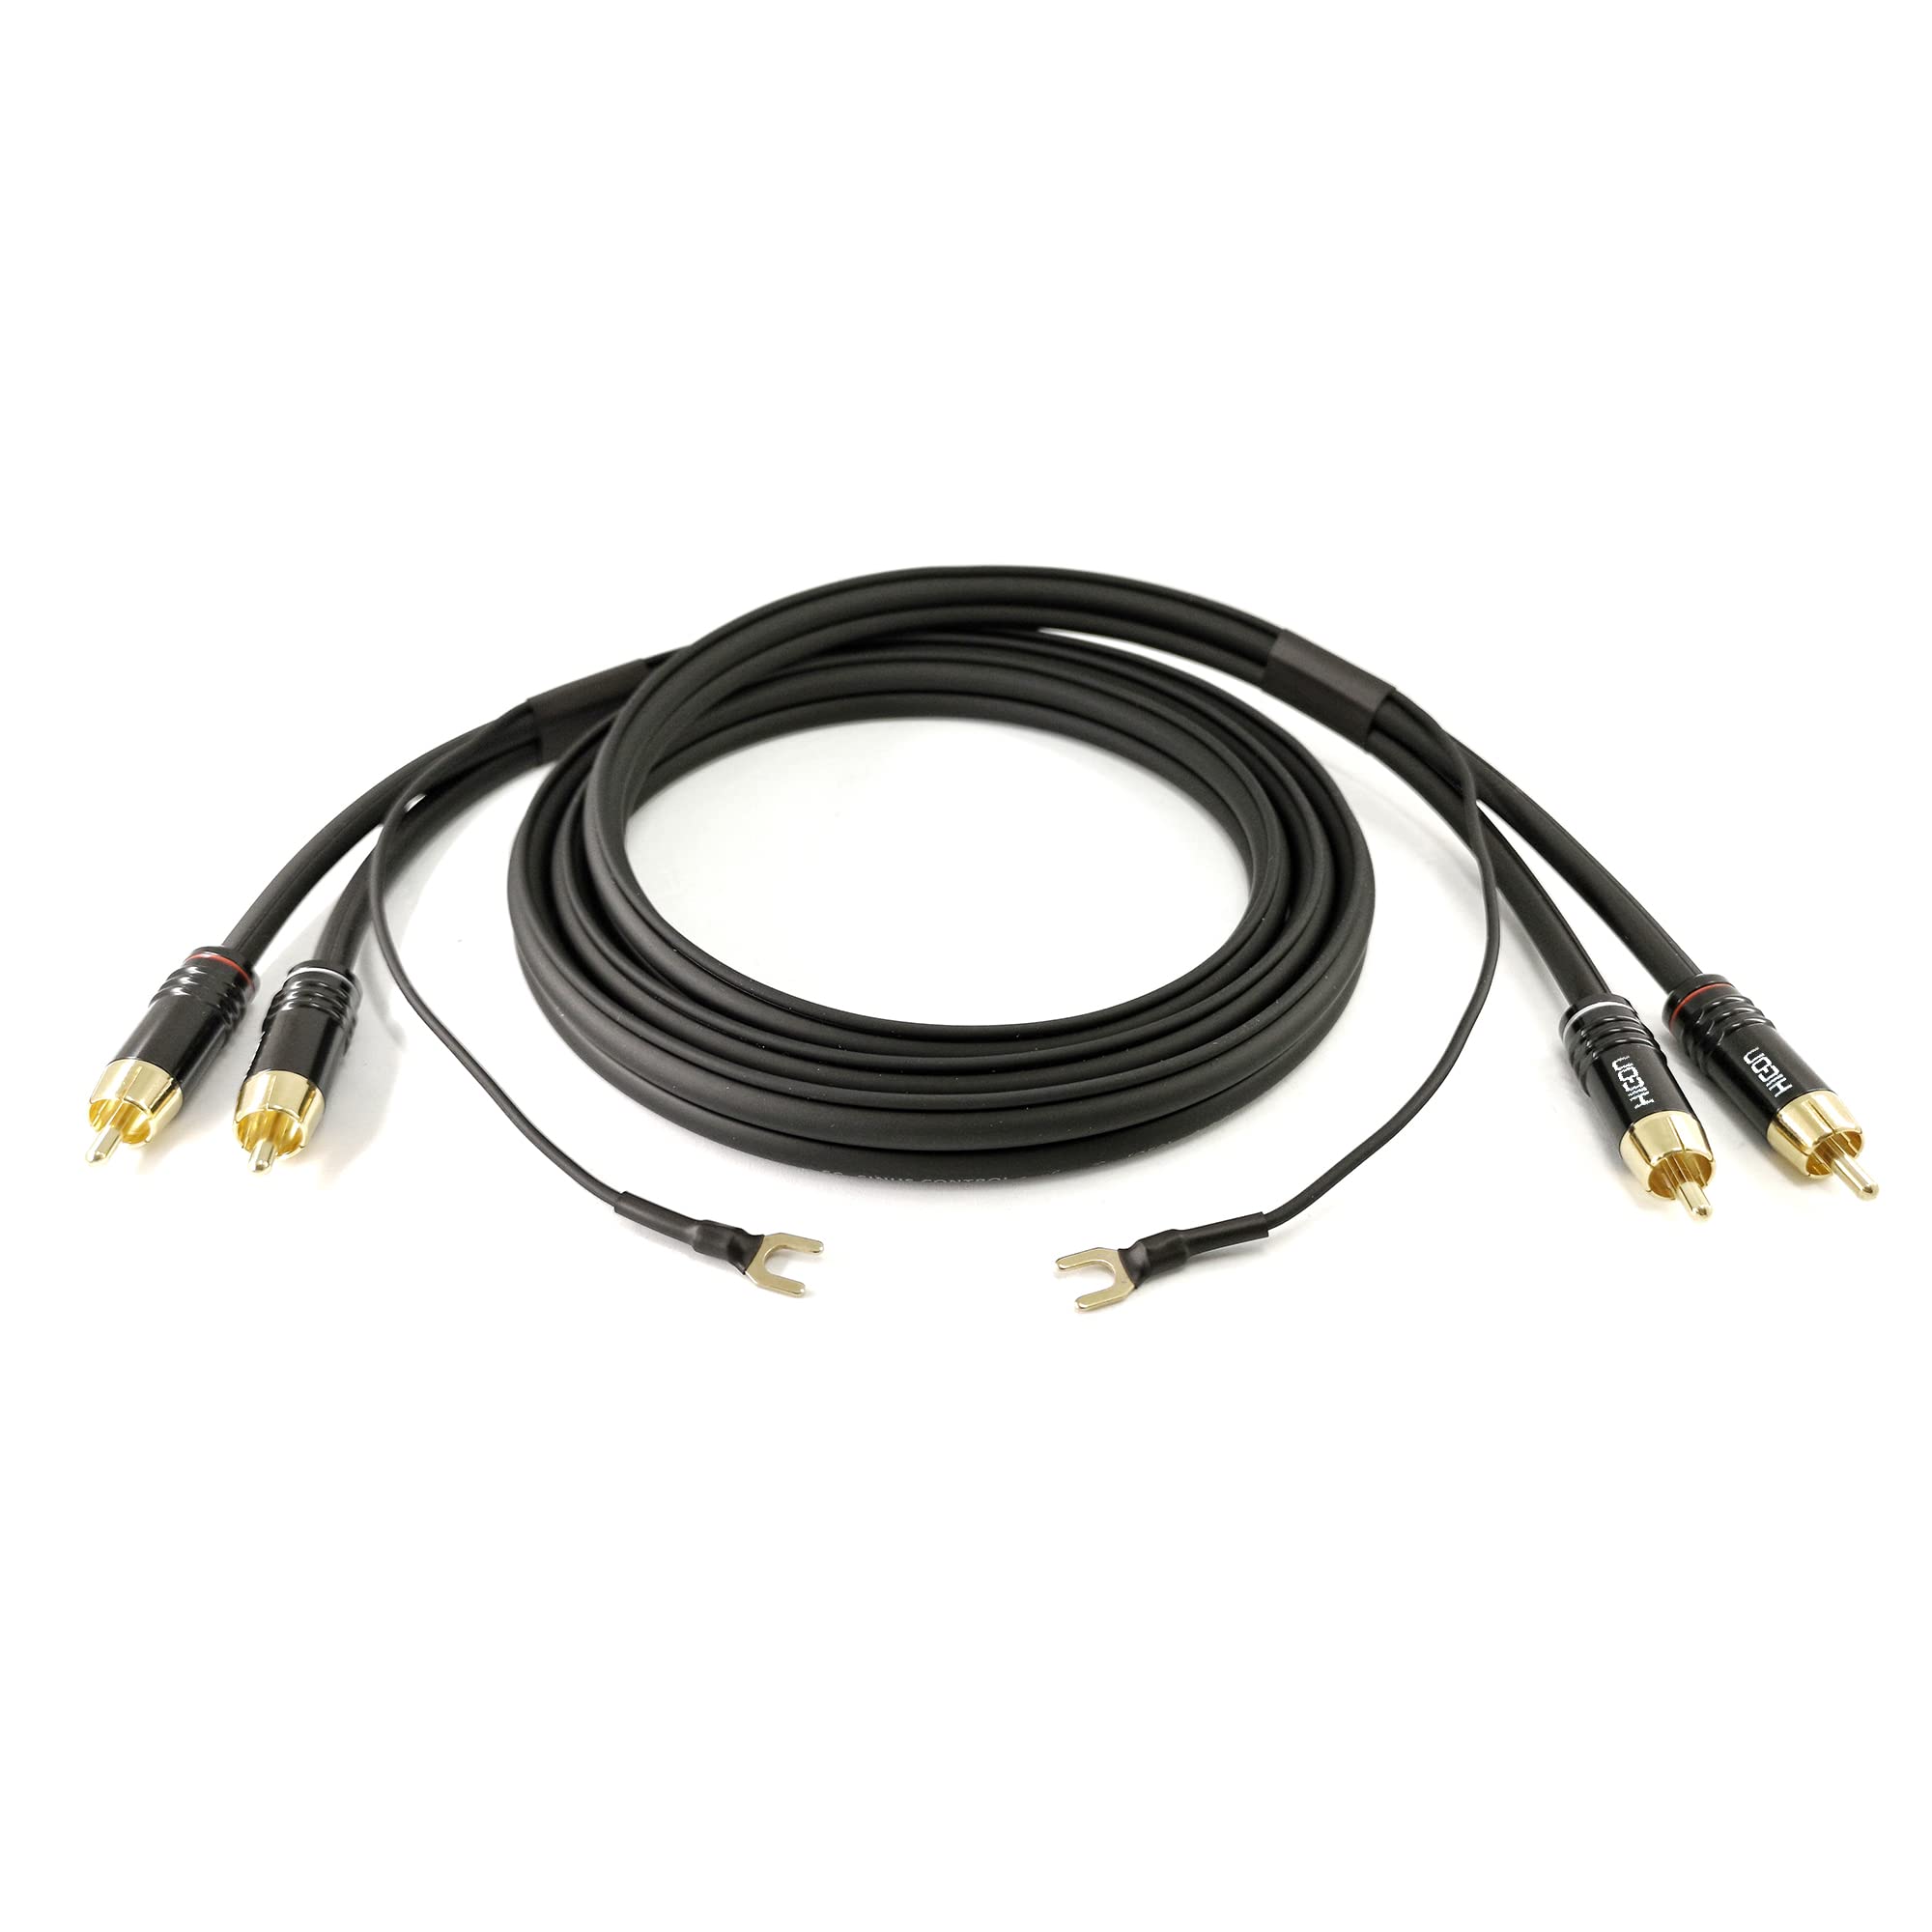 Selected Cable 10m Phonokabel schwarz geschirmt Stereo OFC 3x 0,35mm² RCA- Cinchkabel extra 10,1m lange Masseleitung für Verstärker GND Anschluß - SC81-K3-BLK-1000